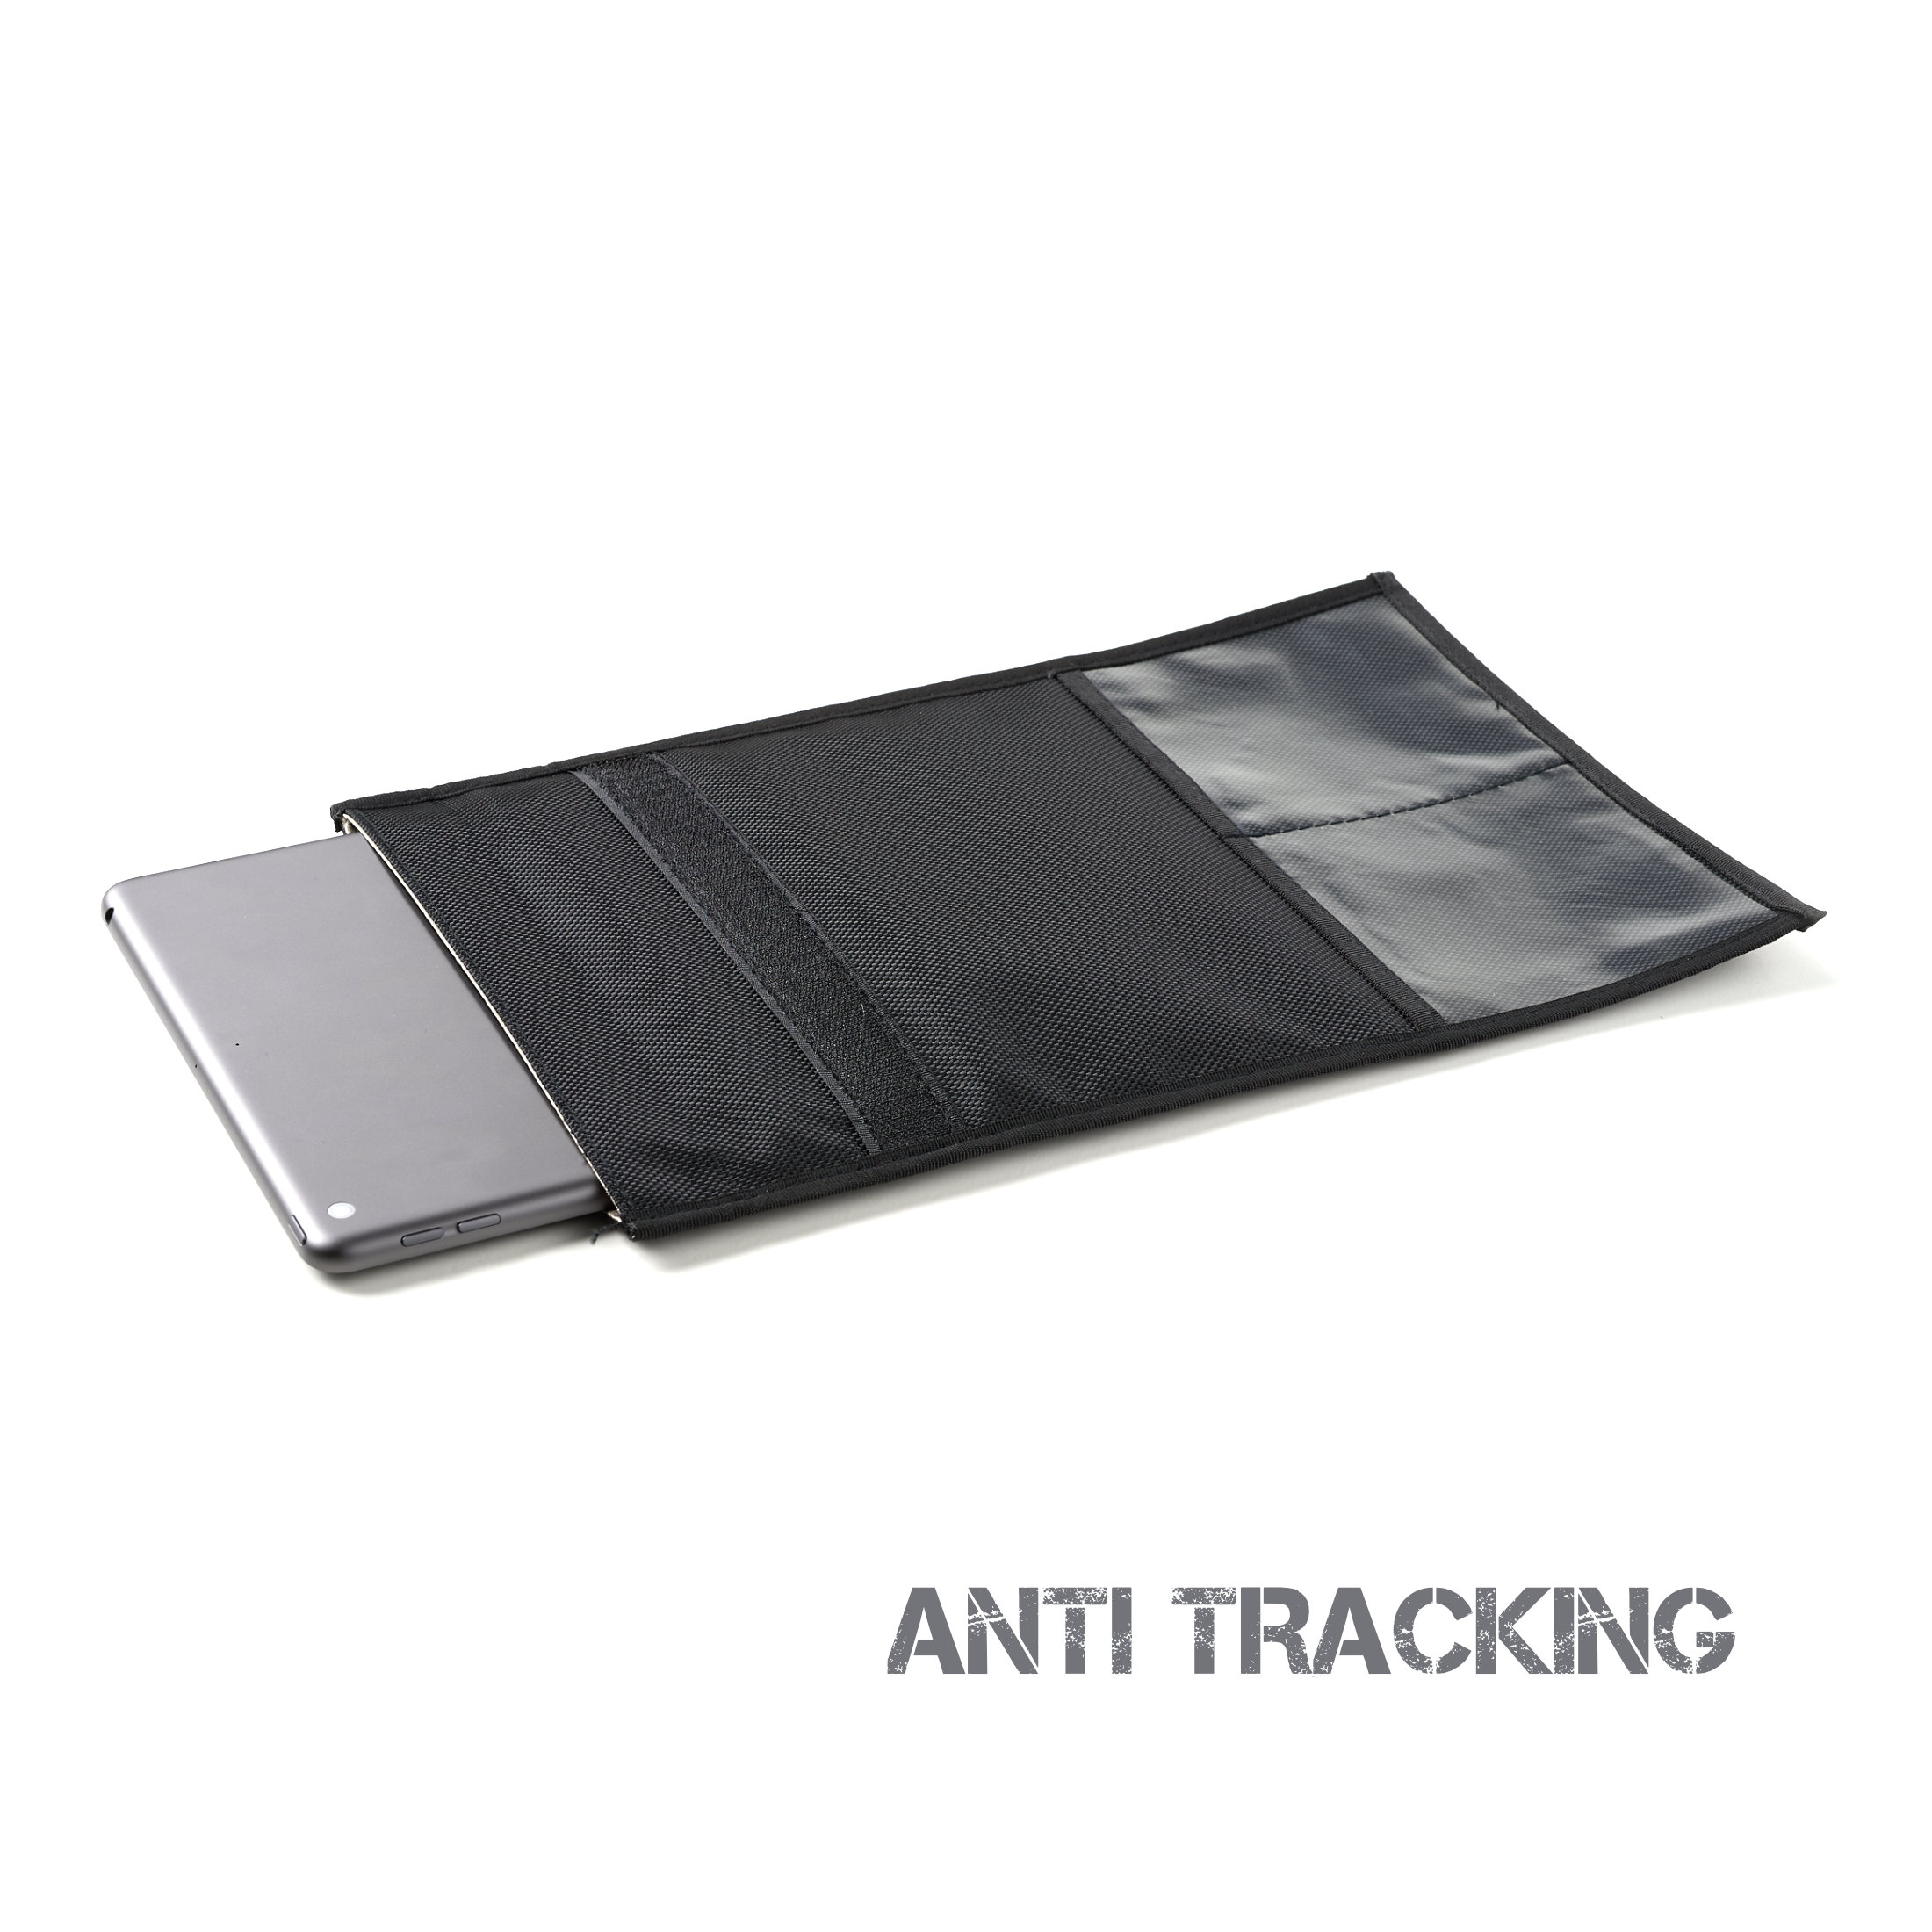 JACKET XXL Forensic Faraday Laptop Bag (14 x 16″)